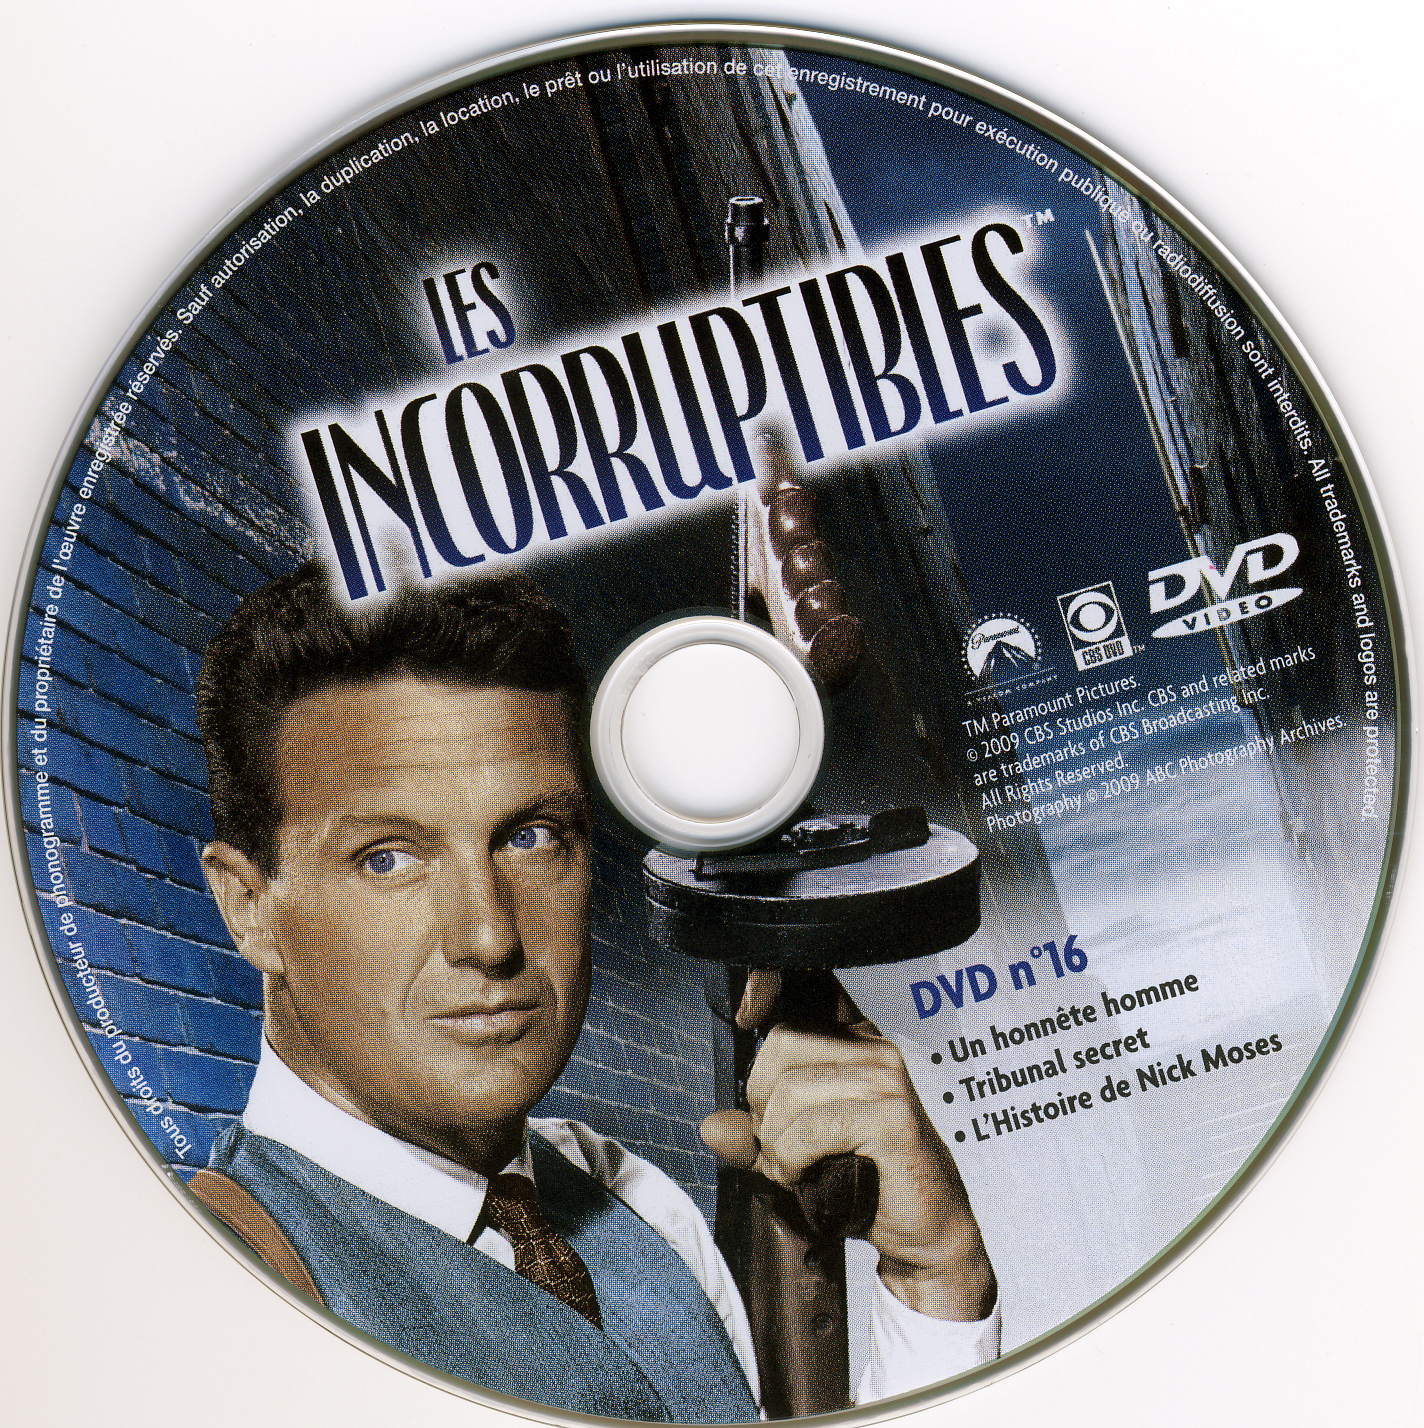 Les incorruptibles intgrale DVD 16 stick